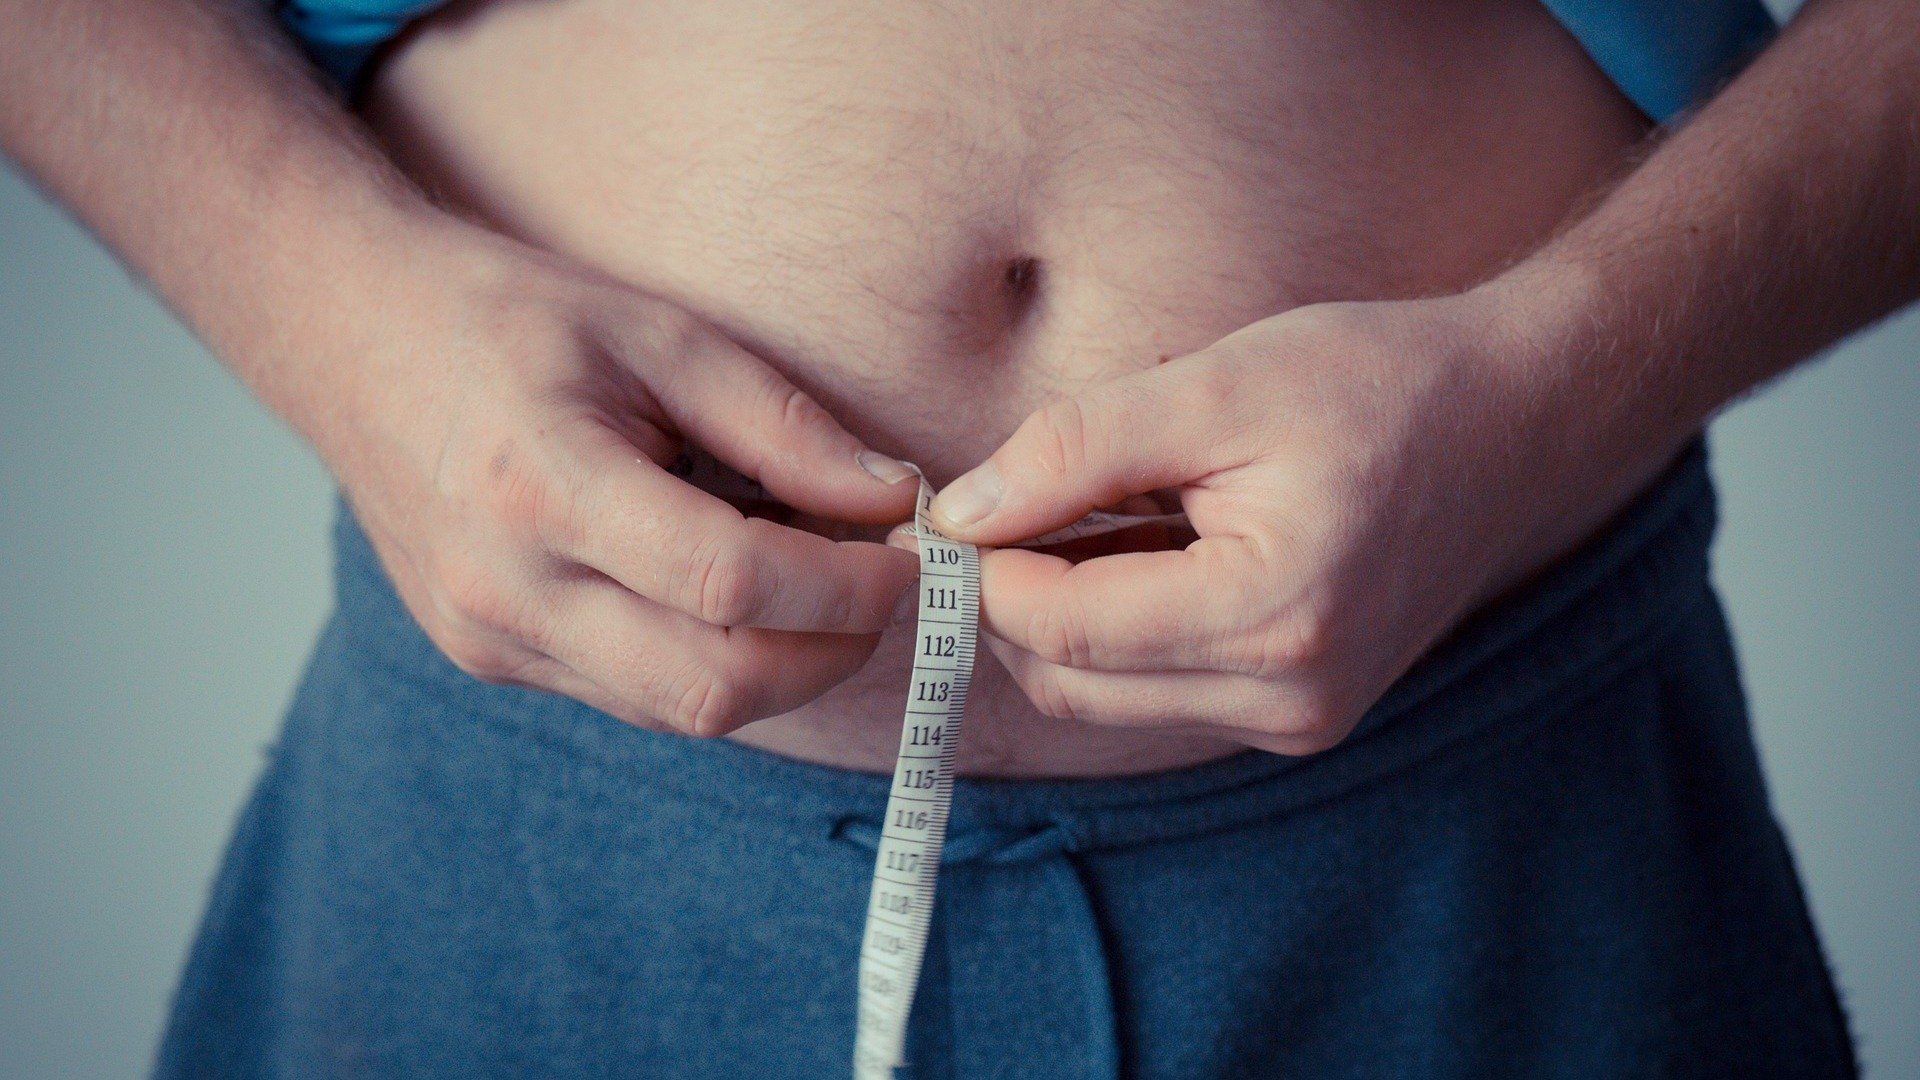 Circunferência abdominal: saiba as medidas ideais e como medir